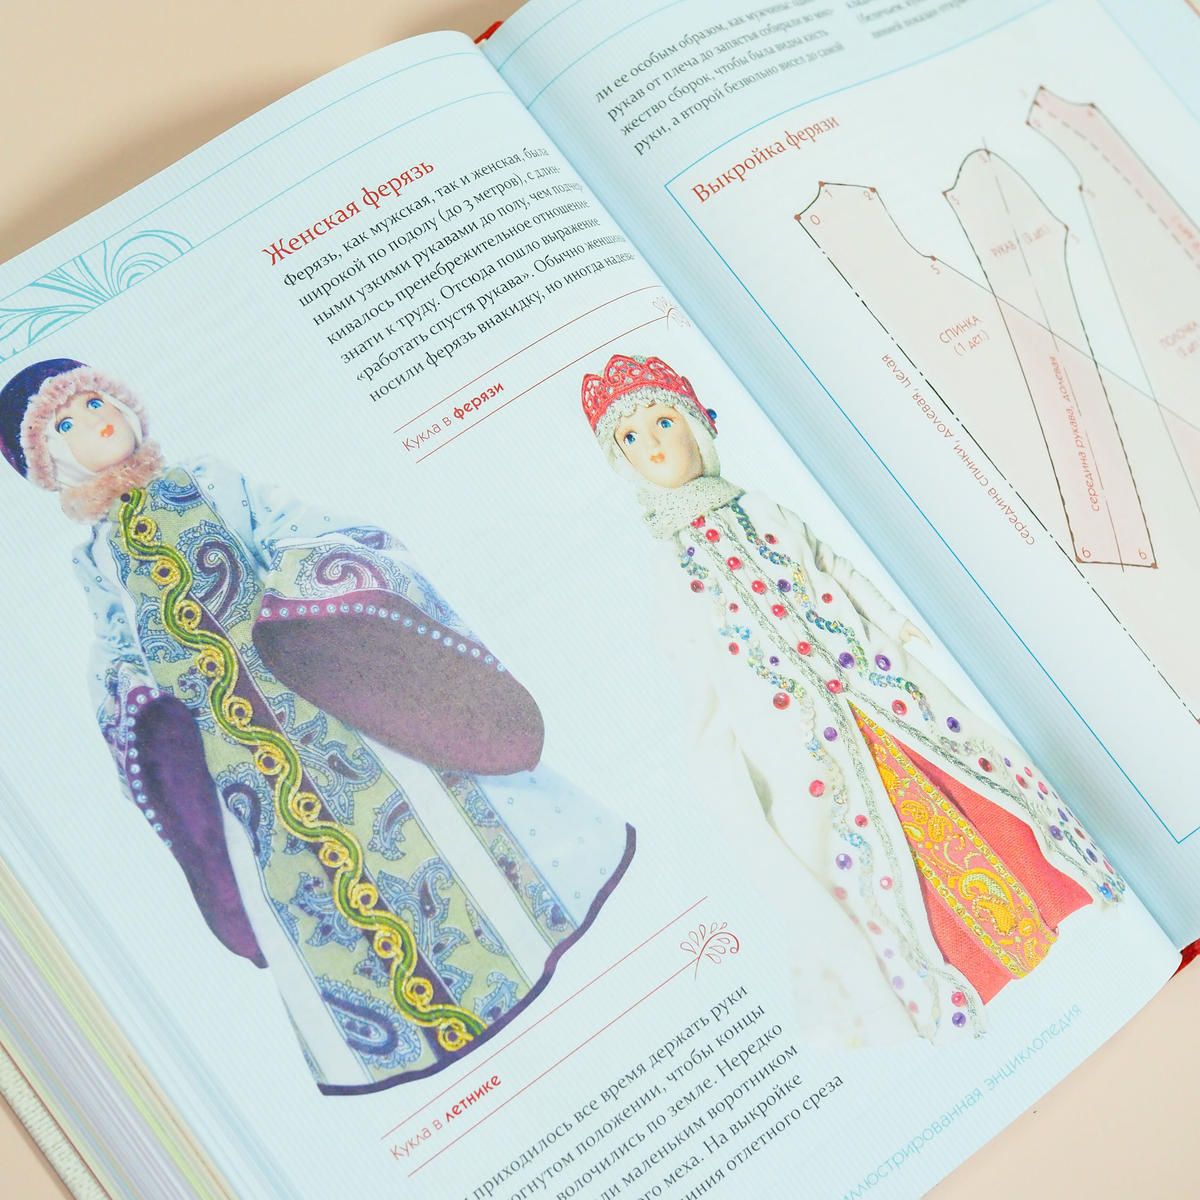 טוויטר Art Book Iskusstvo בטוויטר ロシアの民族衣装大全 可愛らしい人形とイラストでロシアの伝統的な民族衣装 を紹介 ココシニク サラファン ルバシカといった各アイテムを簡単な裁断図を載せながら詳細に解説しています イラストや創作などの資料としても